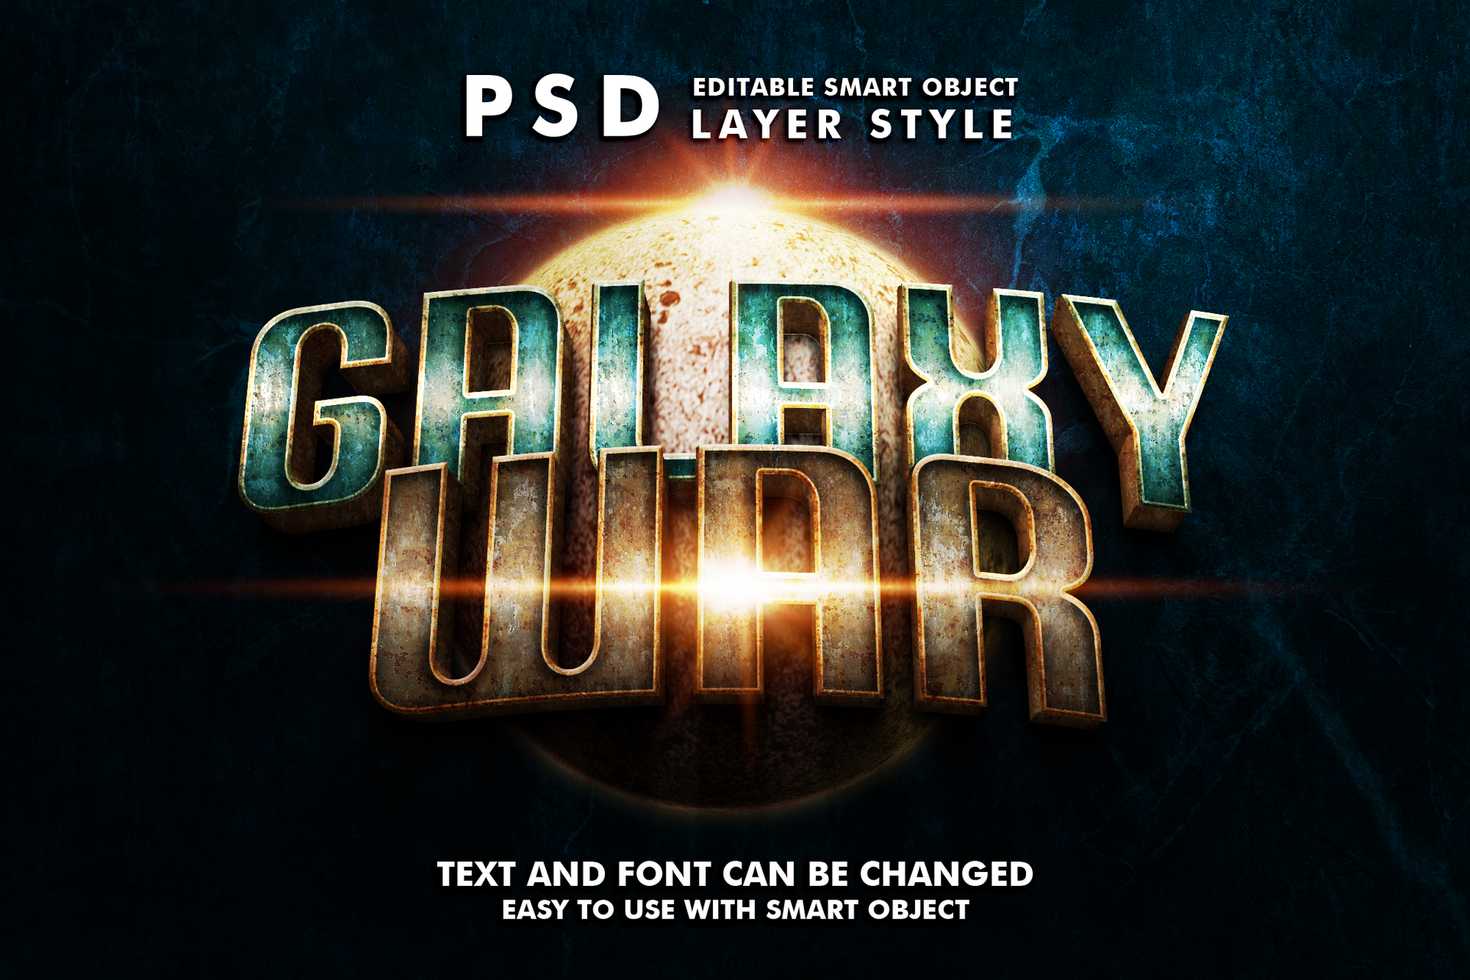 Galaxy War Editable Text Effect psd